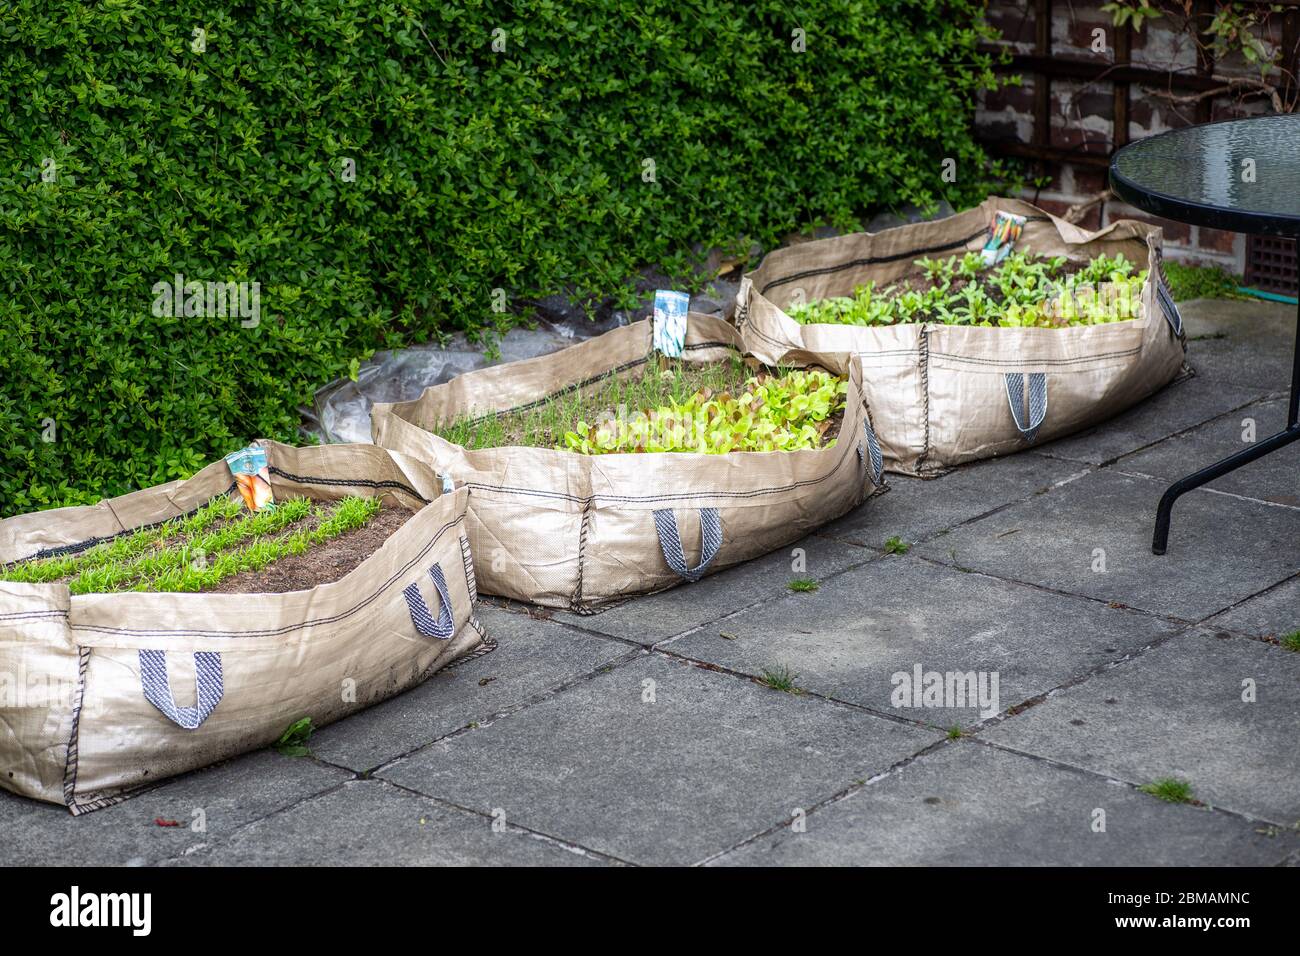 Verdure coltivate in casa in un sacchetto di crescita sul patio come risultato del covid19 lockdown, Inghilterra, Regno Unito, 2020 Foto Stock